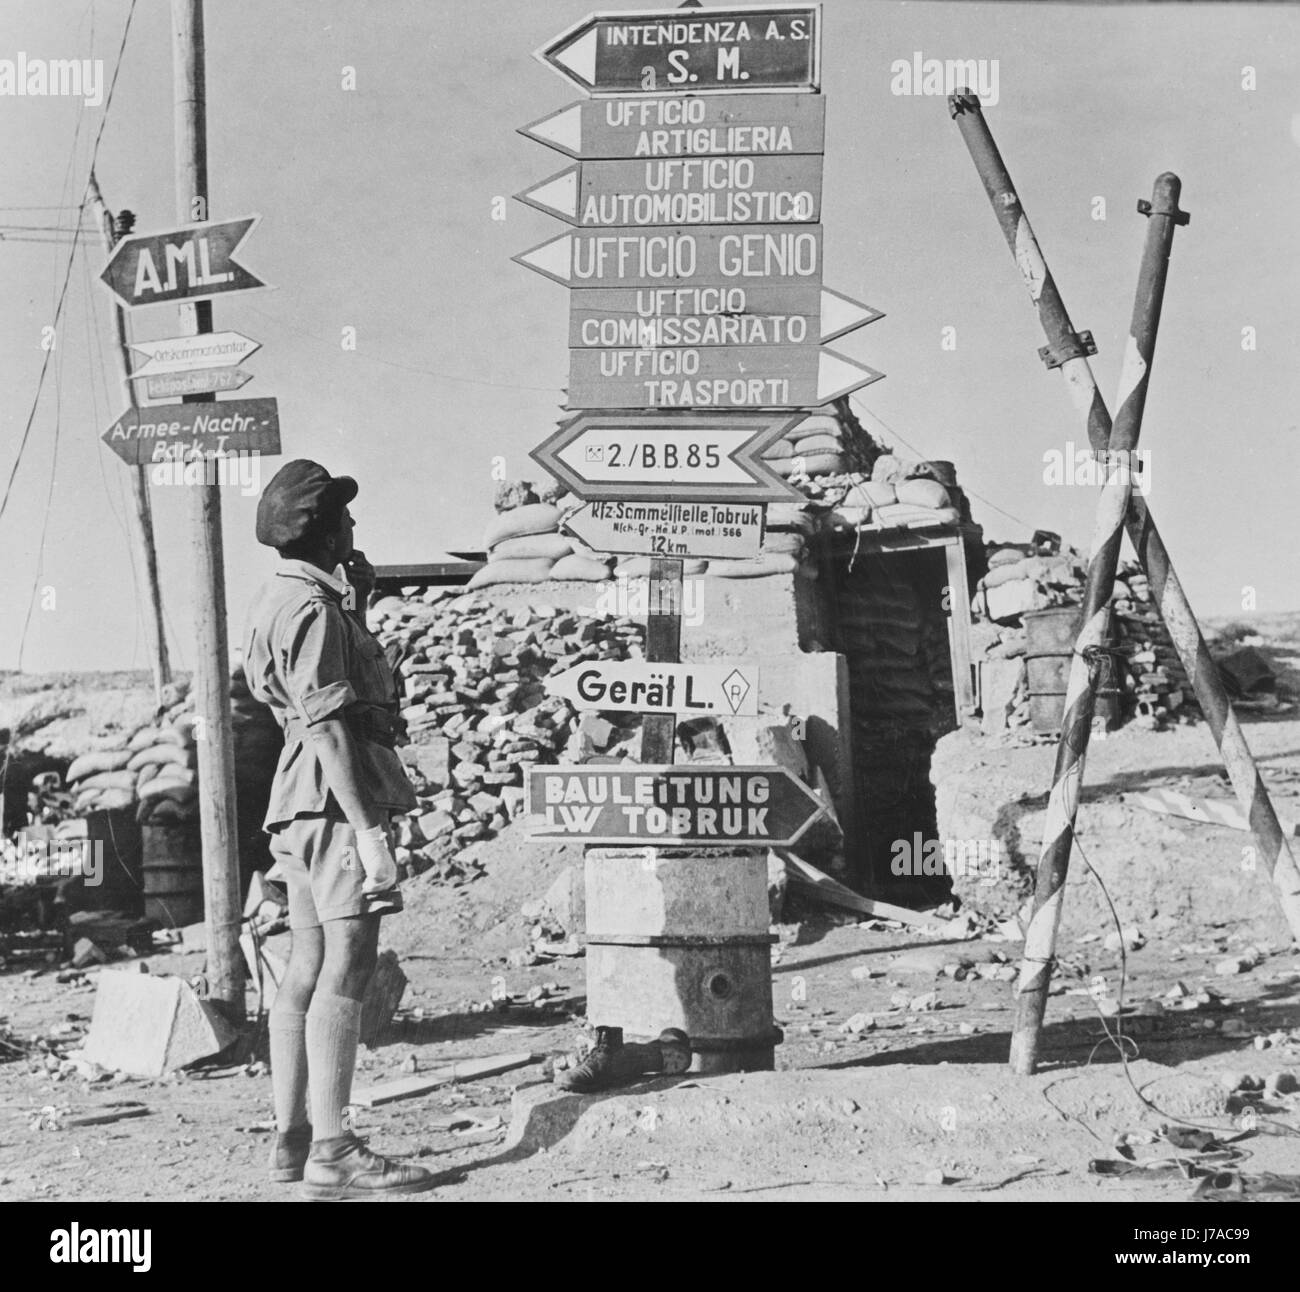 Ortstafeln in deutscher und italienischer Sprache an einer Straßenecke in Tobruk, Libyen, ca. 1942 gedruckt. Stockfoto